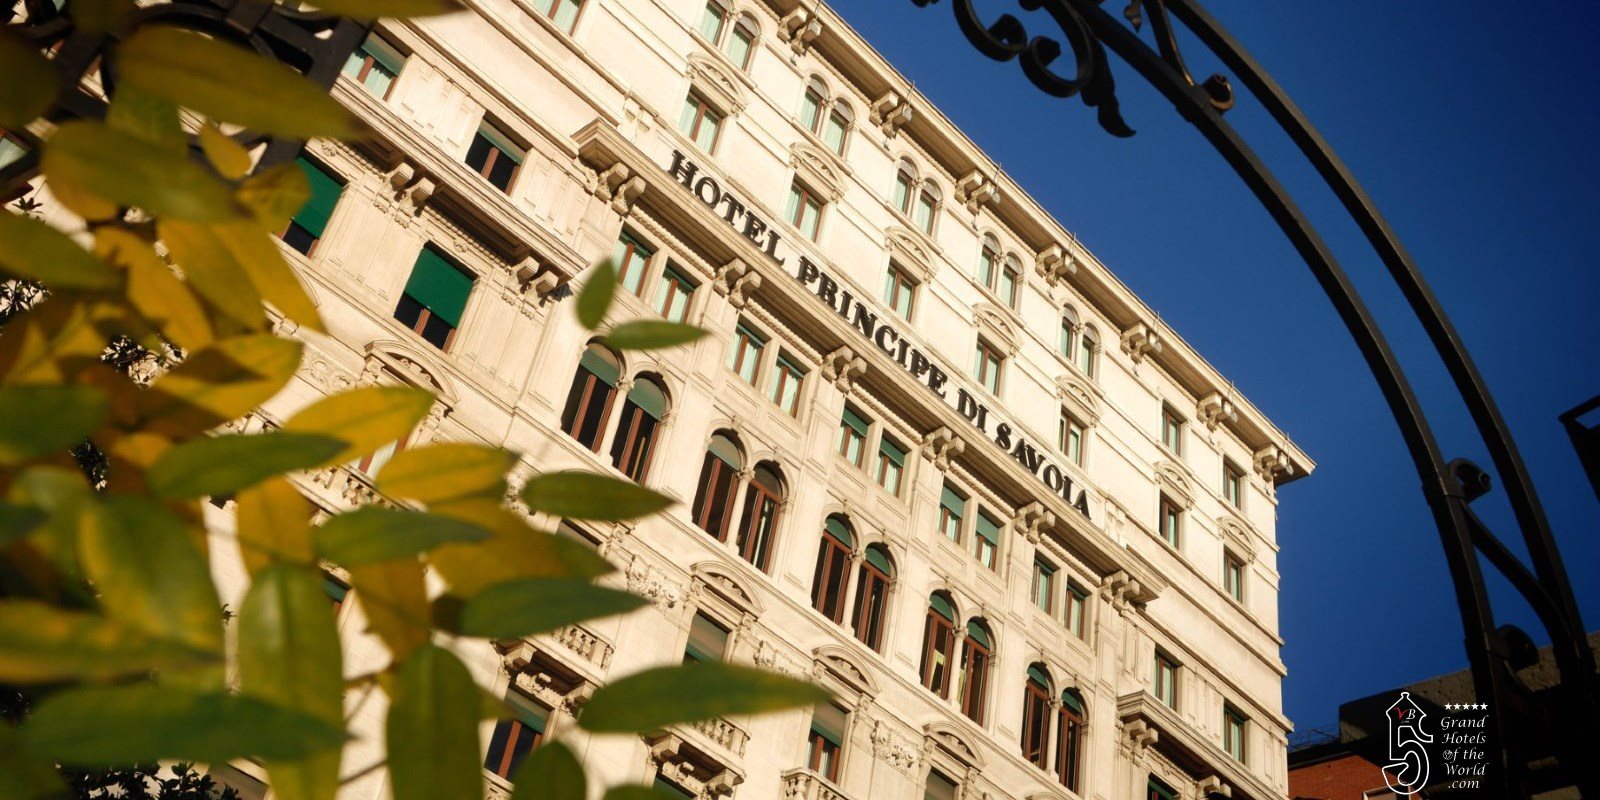 Hotel Principe di Savoia in Milan